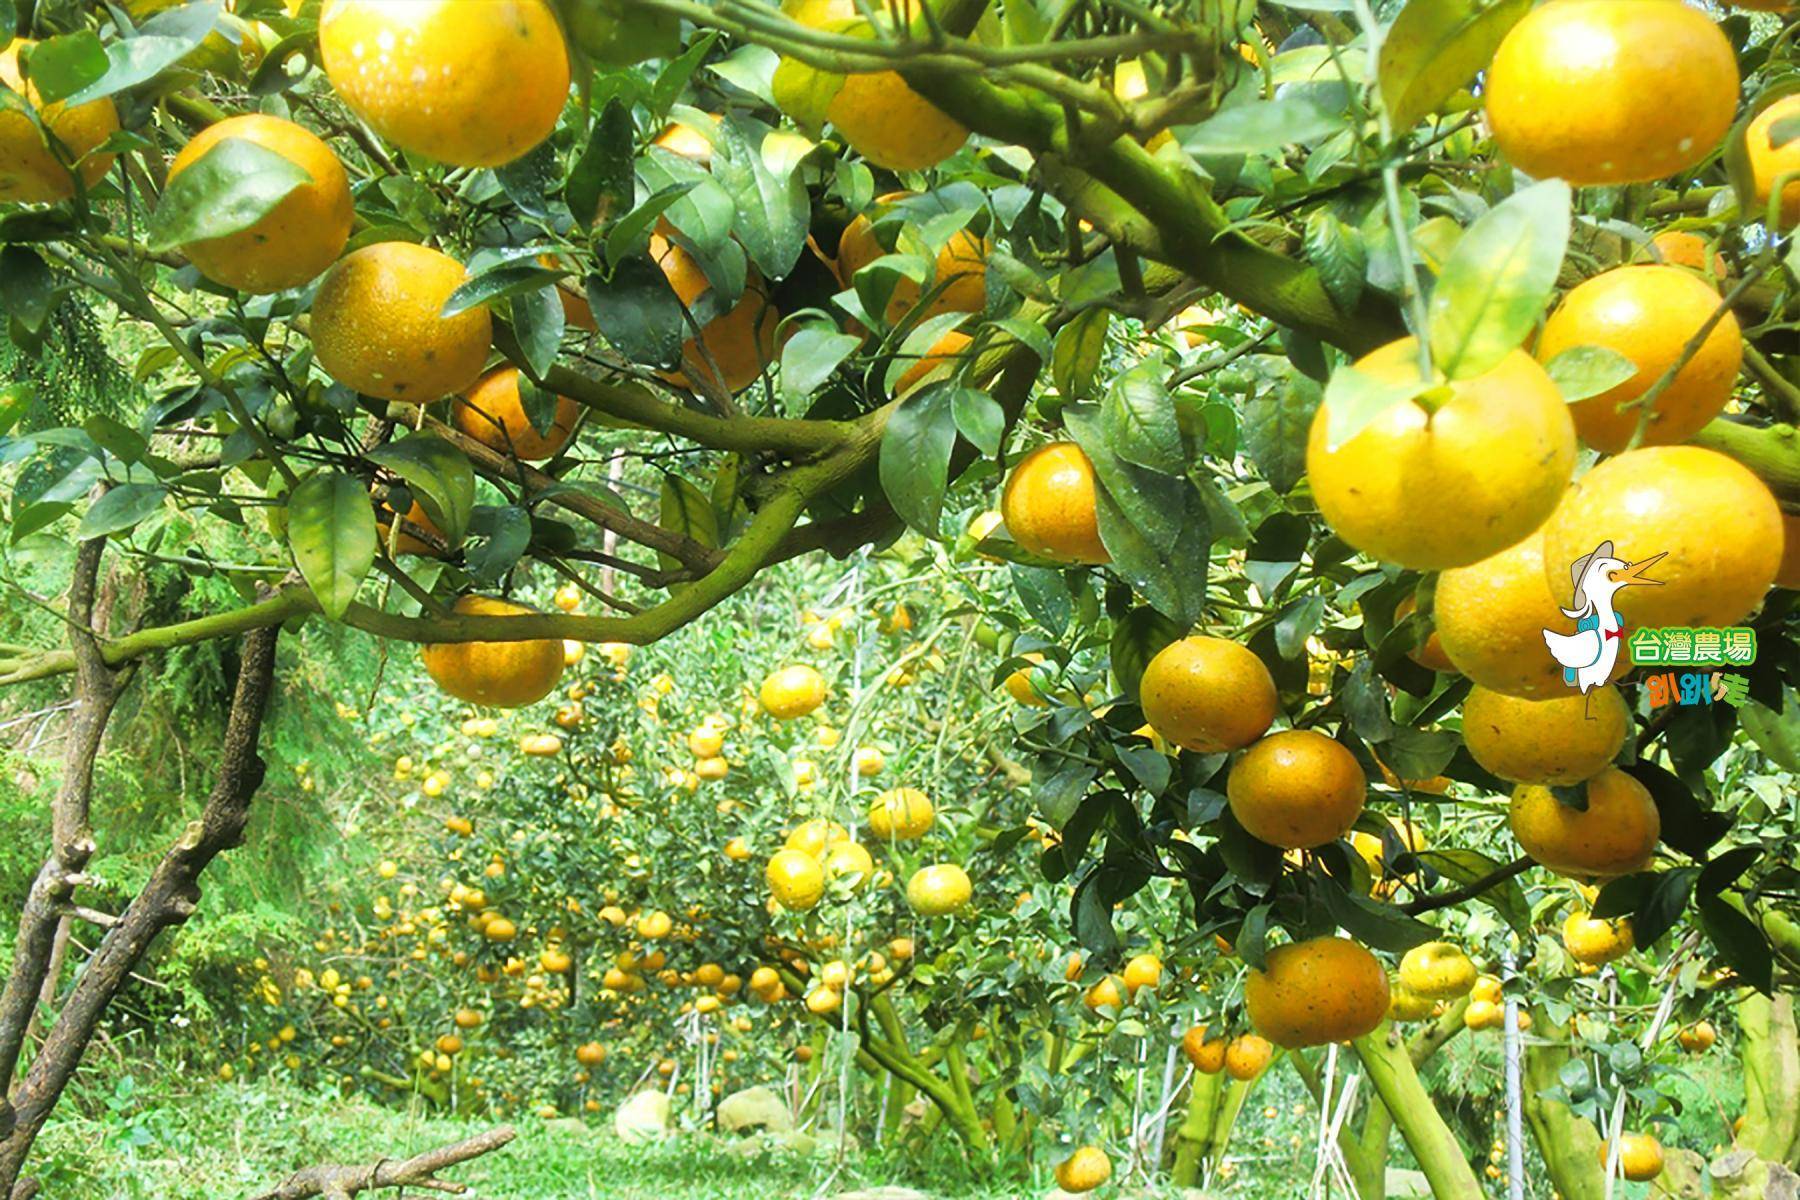 台中-公道農園-採果(柑橘、檸檬)體驗券1